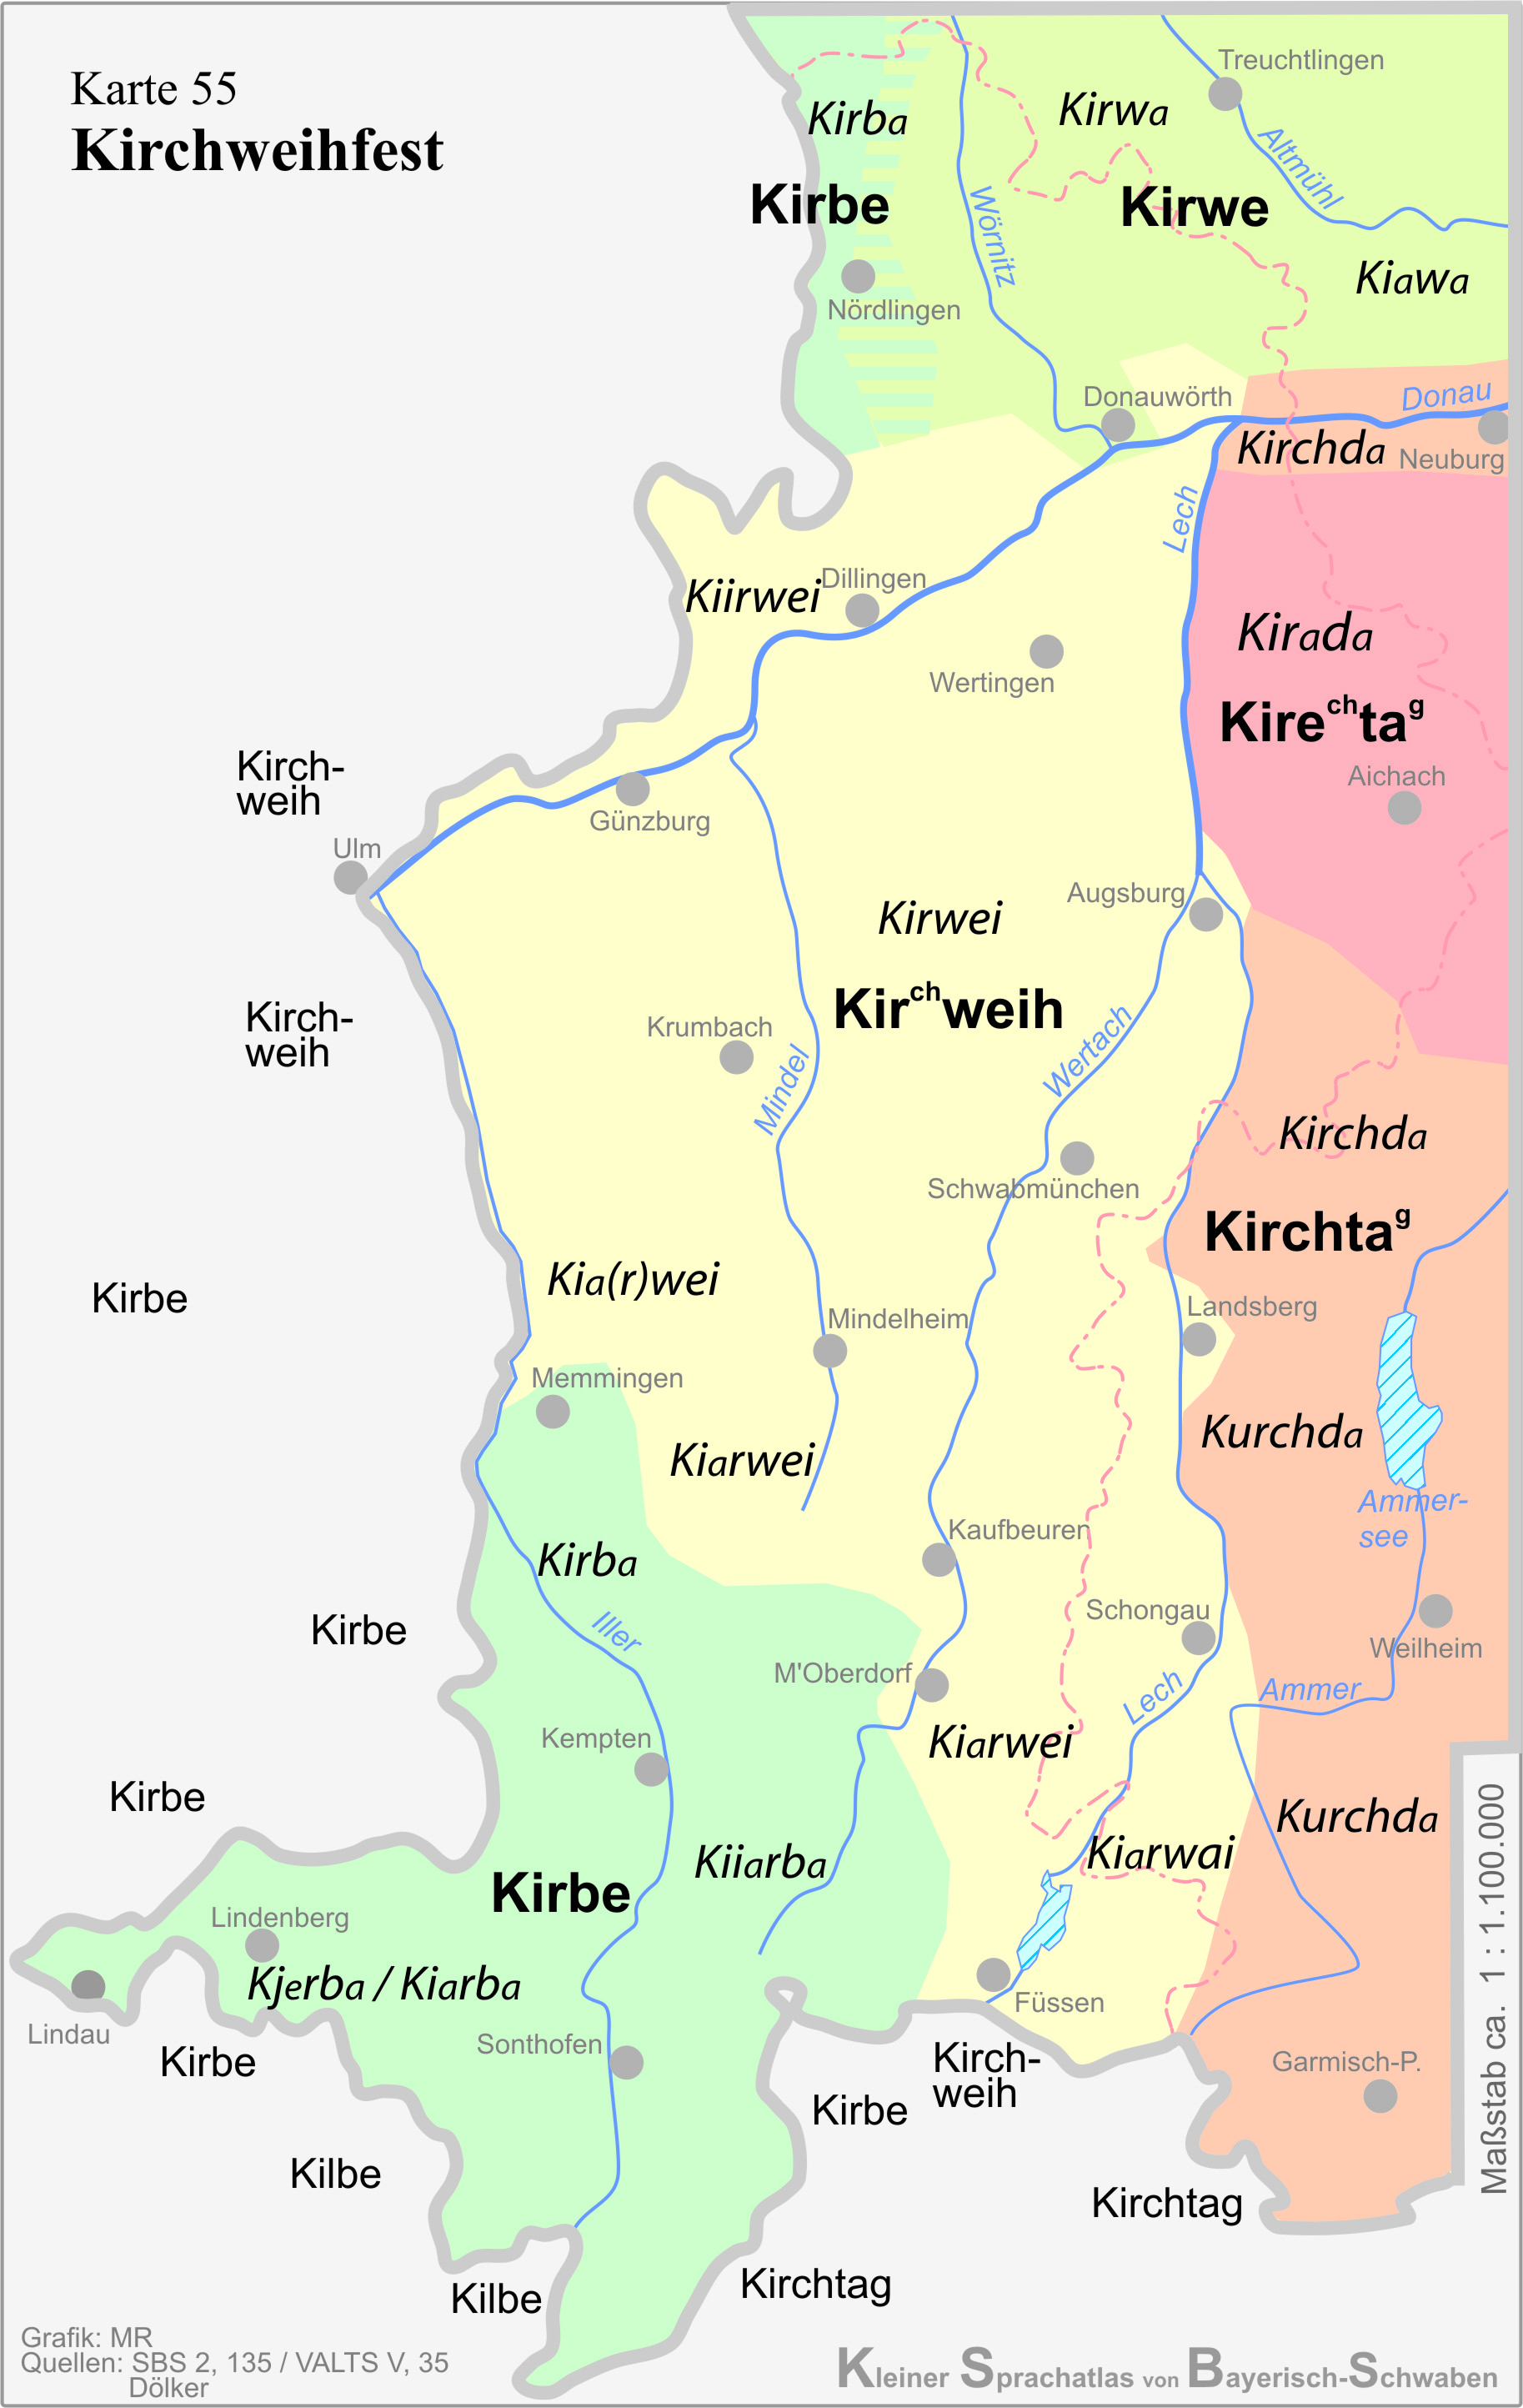 Regional unterschiedliche Bezeichnungen für das Wort "Kirchweihfest"